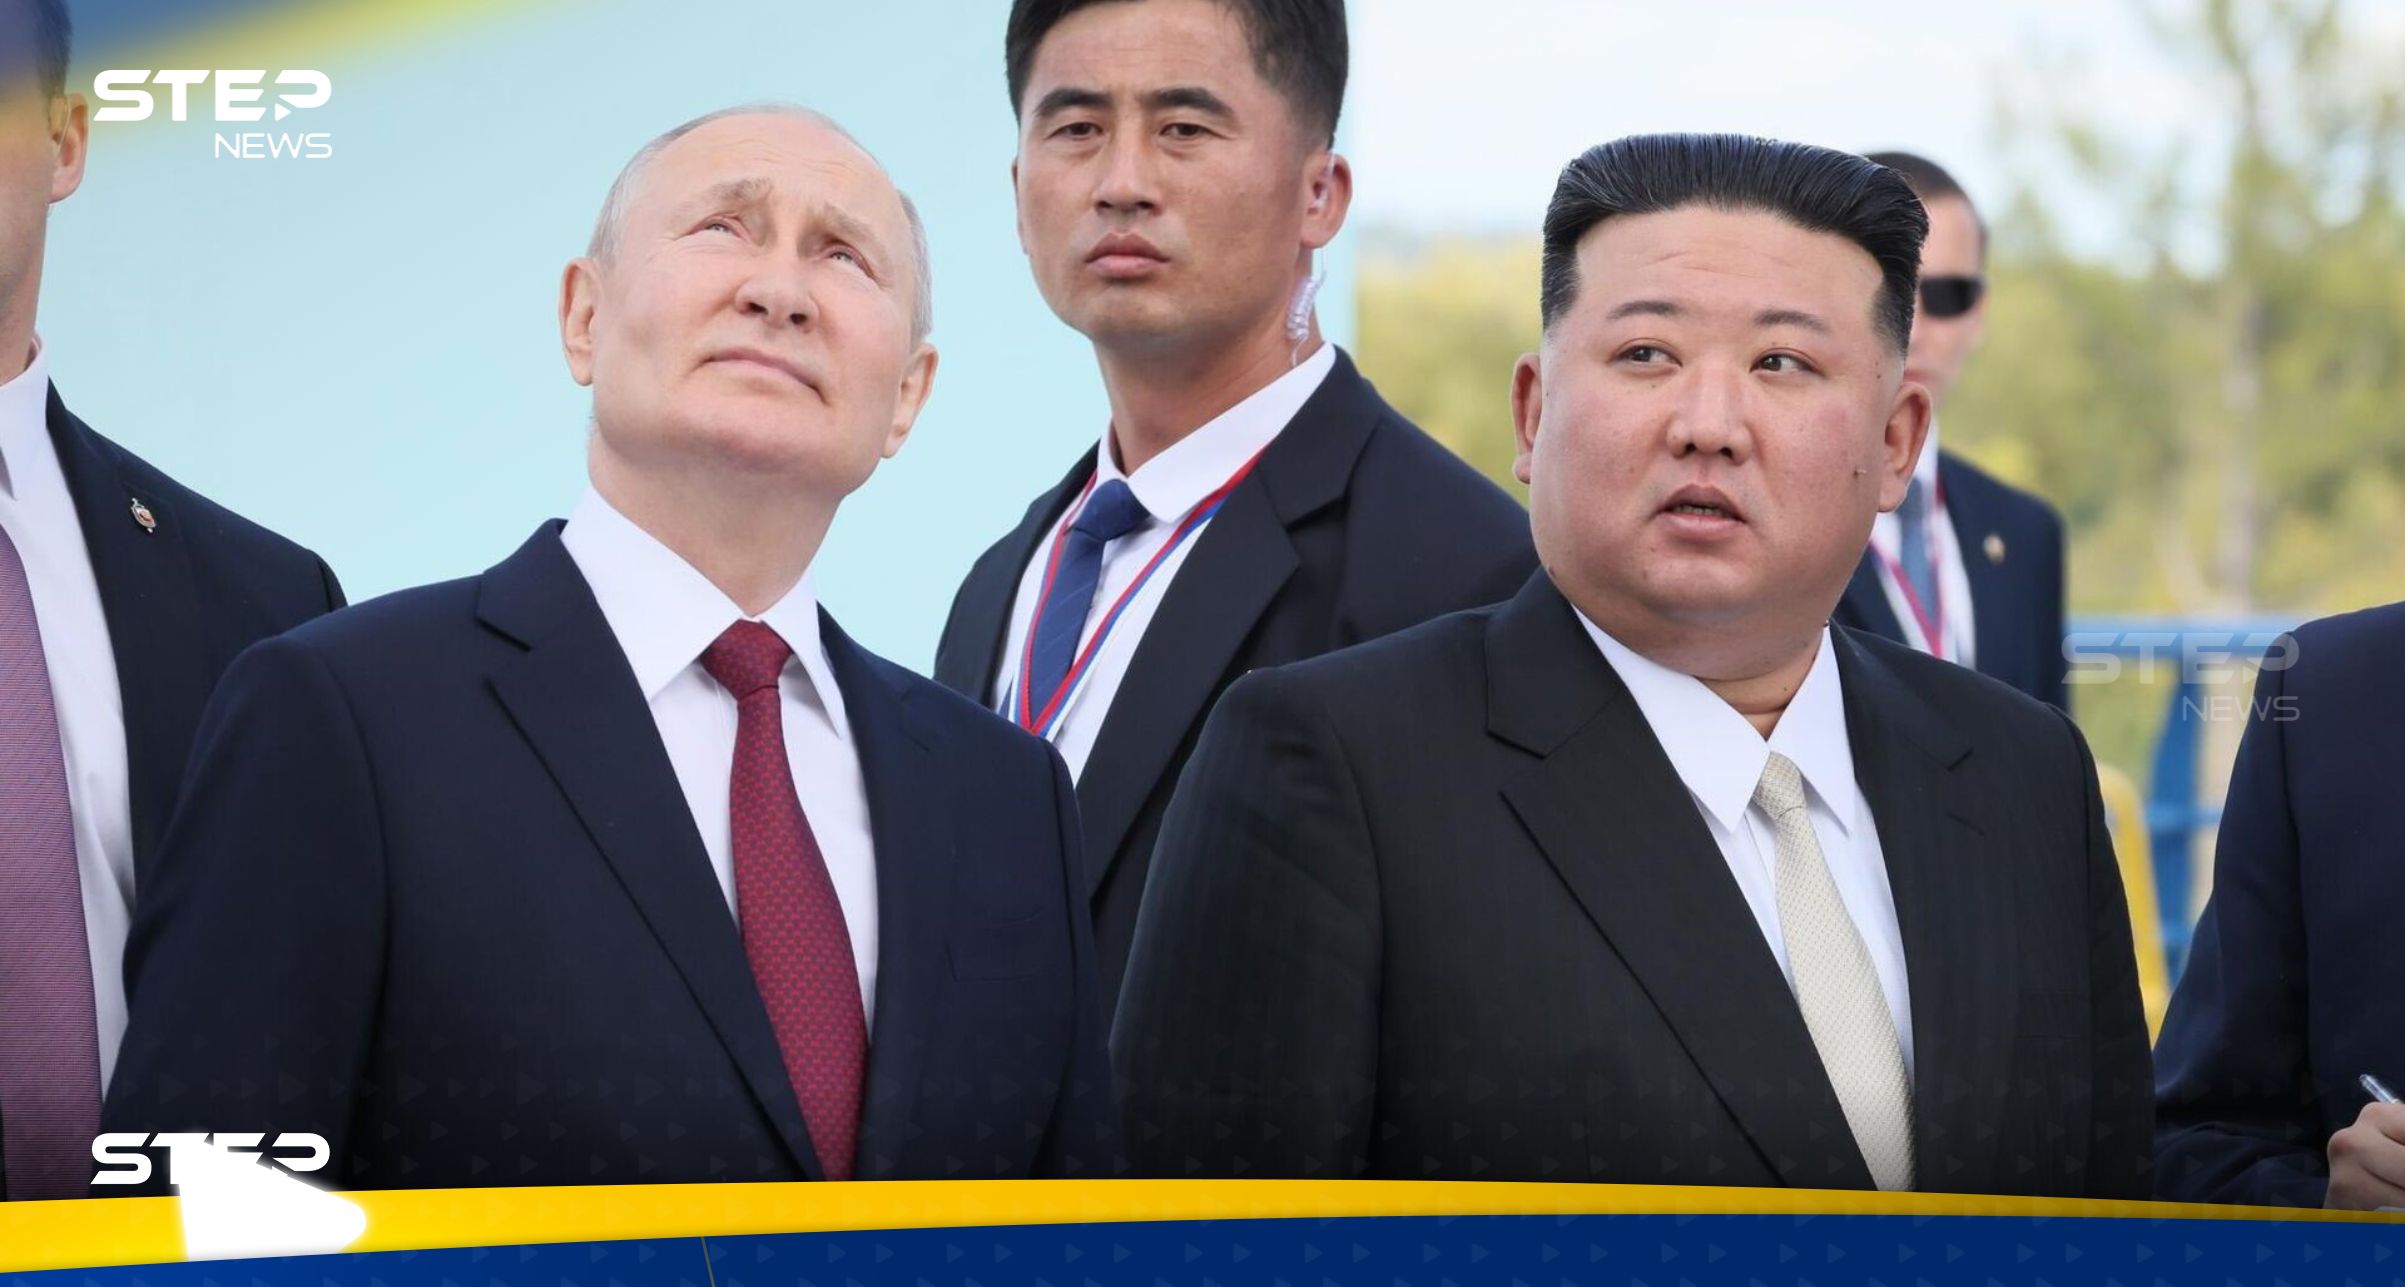 أمريكا تعلق بسخرية على هدية قدمها بوتين إلى كيم جونغ أون